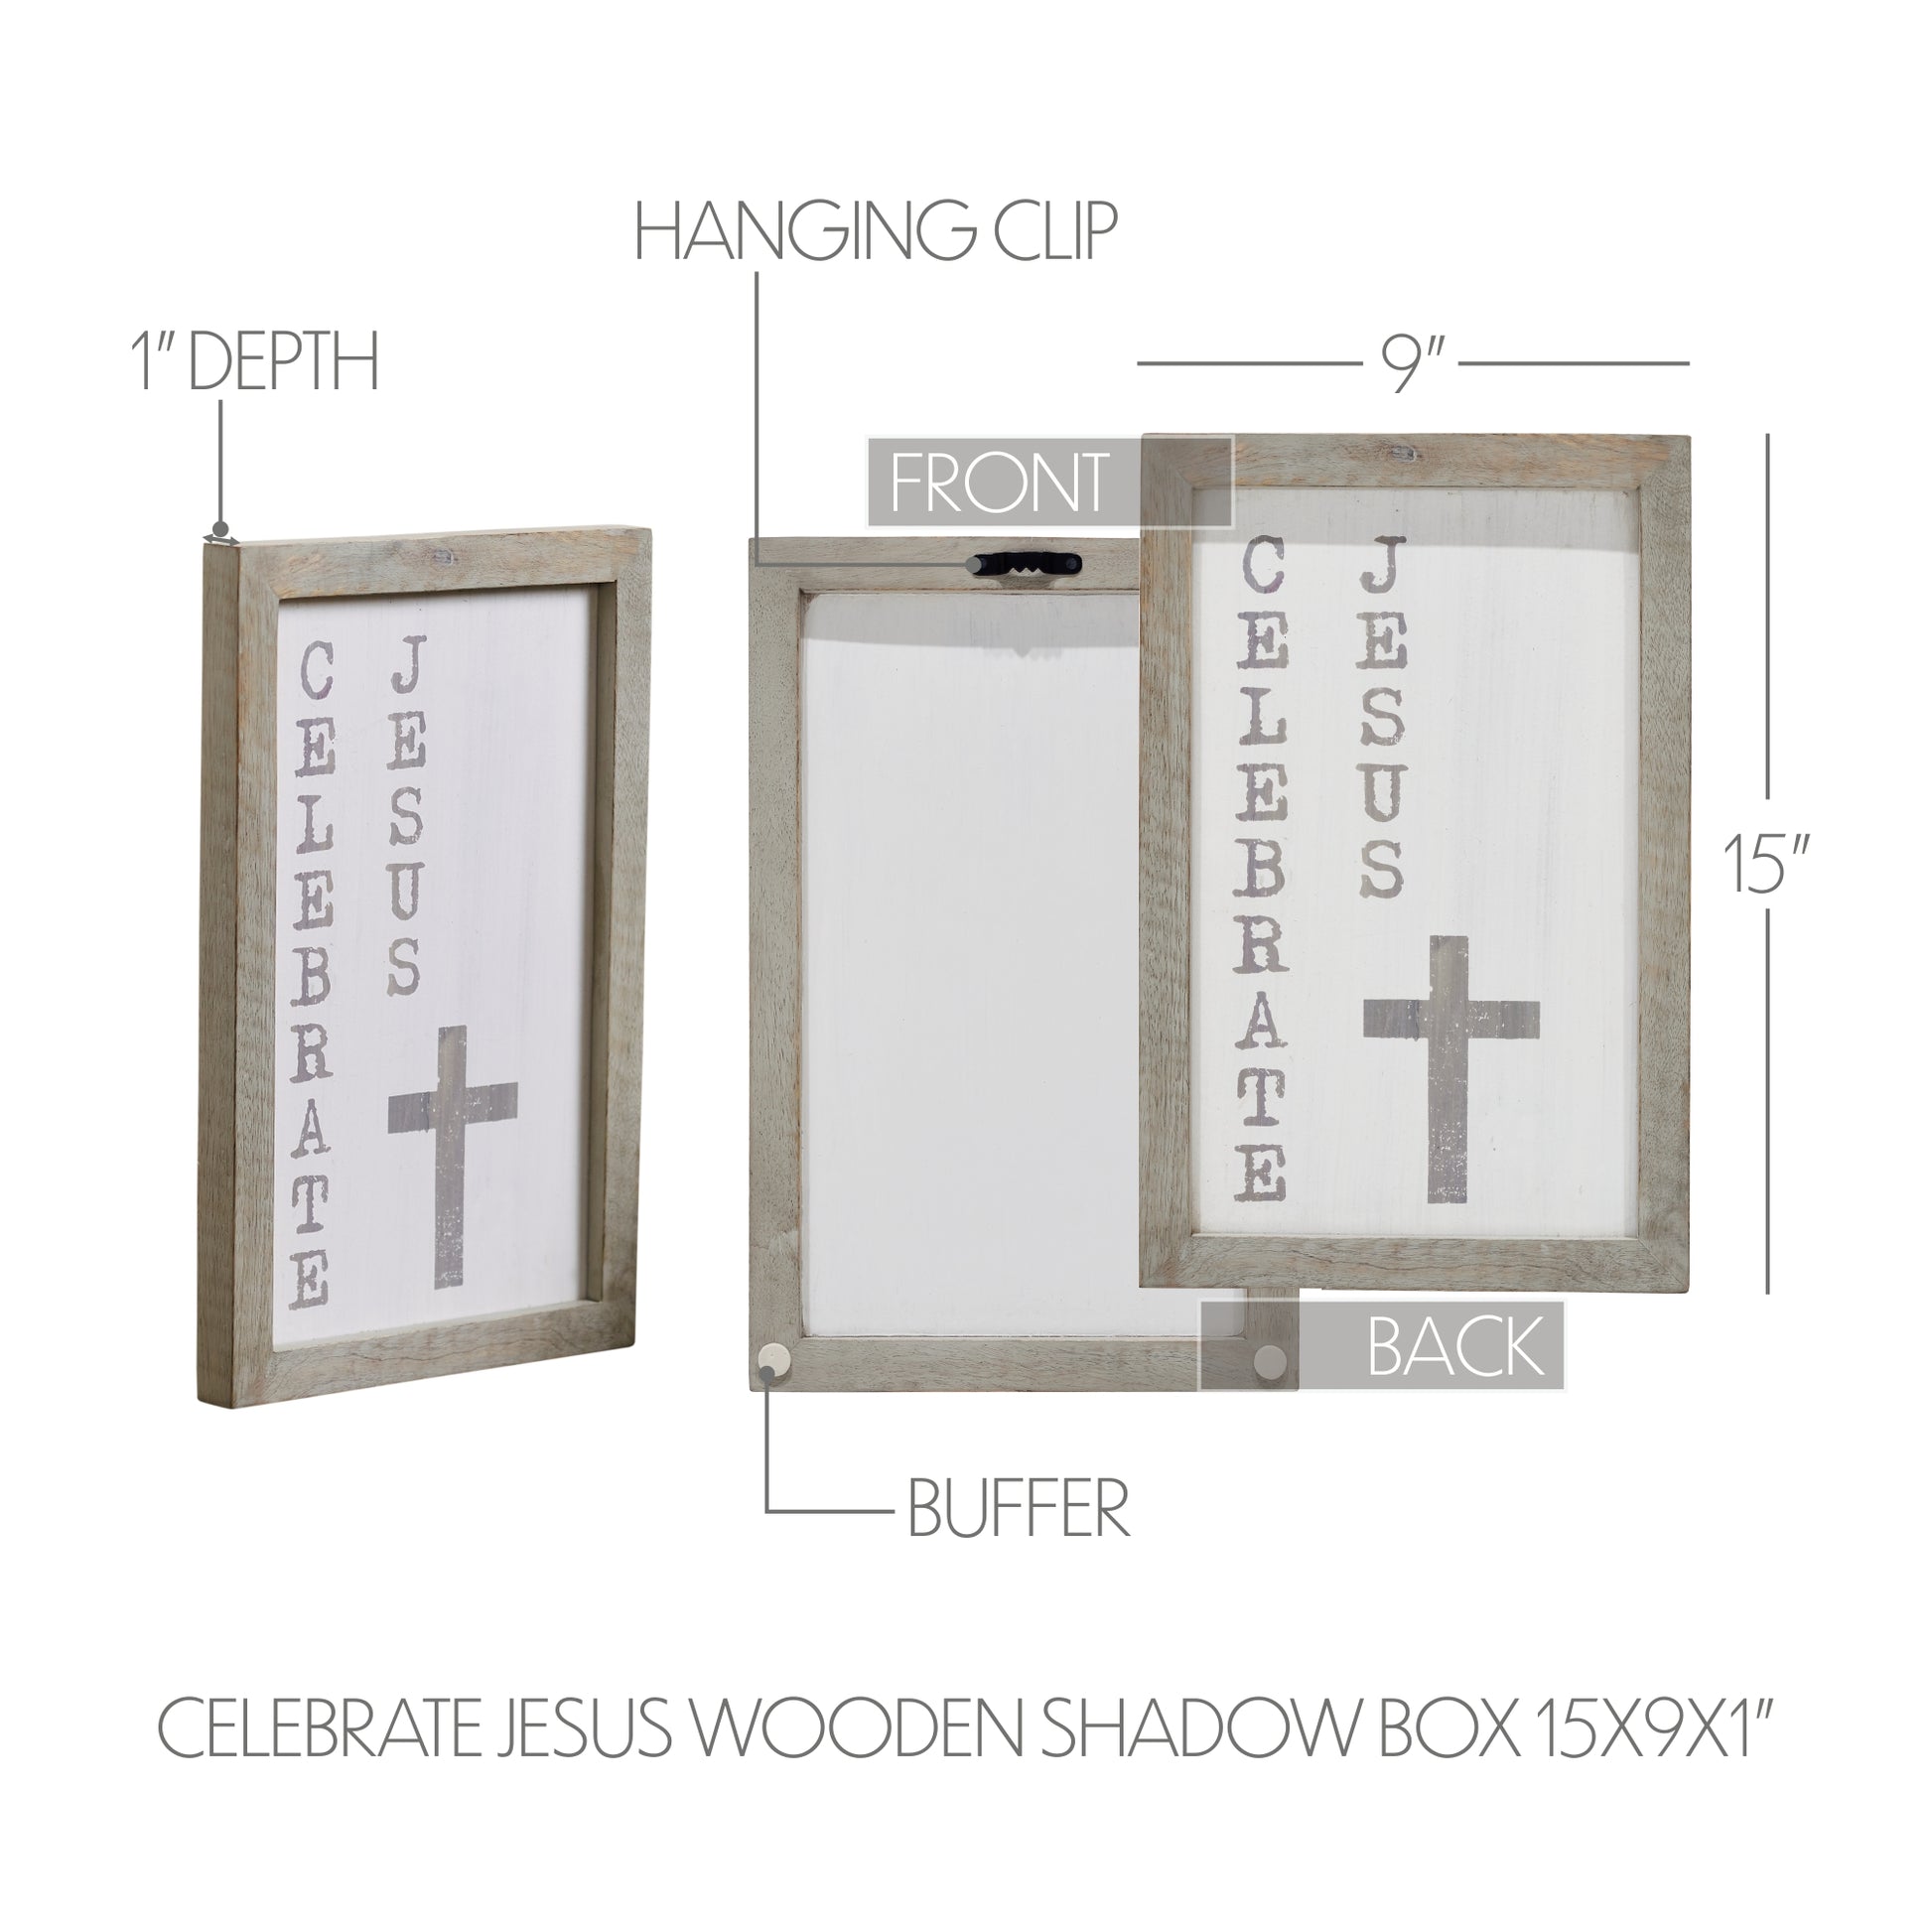 Celebrate Jesus Wooden Shadow Box Frame 15x9x1 SpadezStore